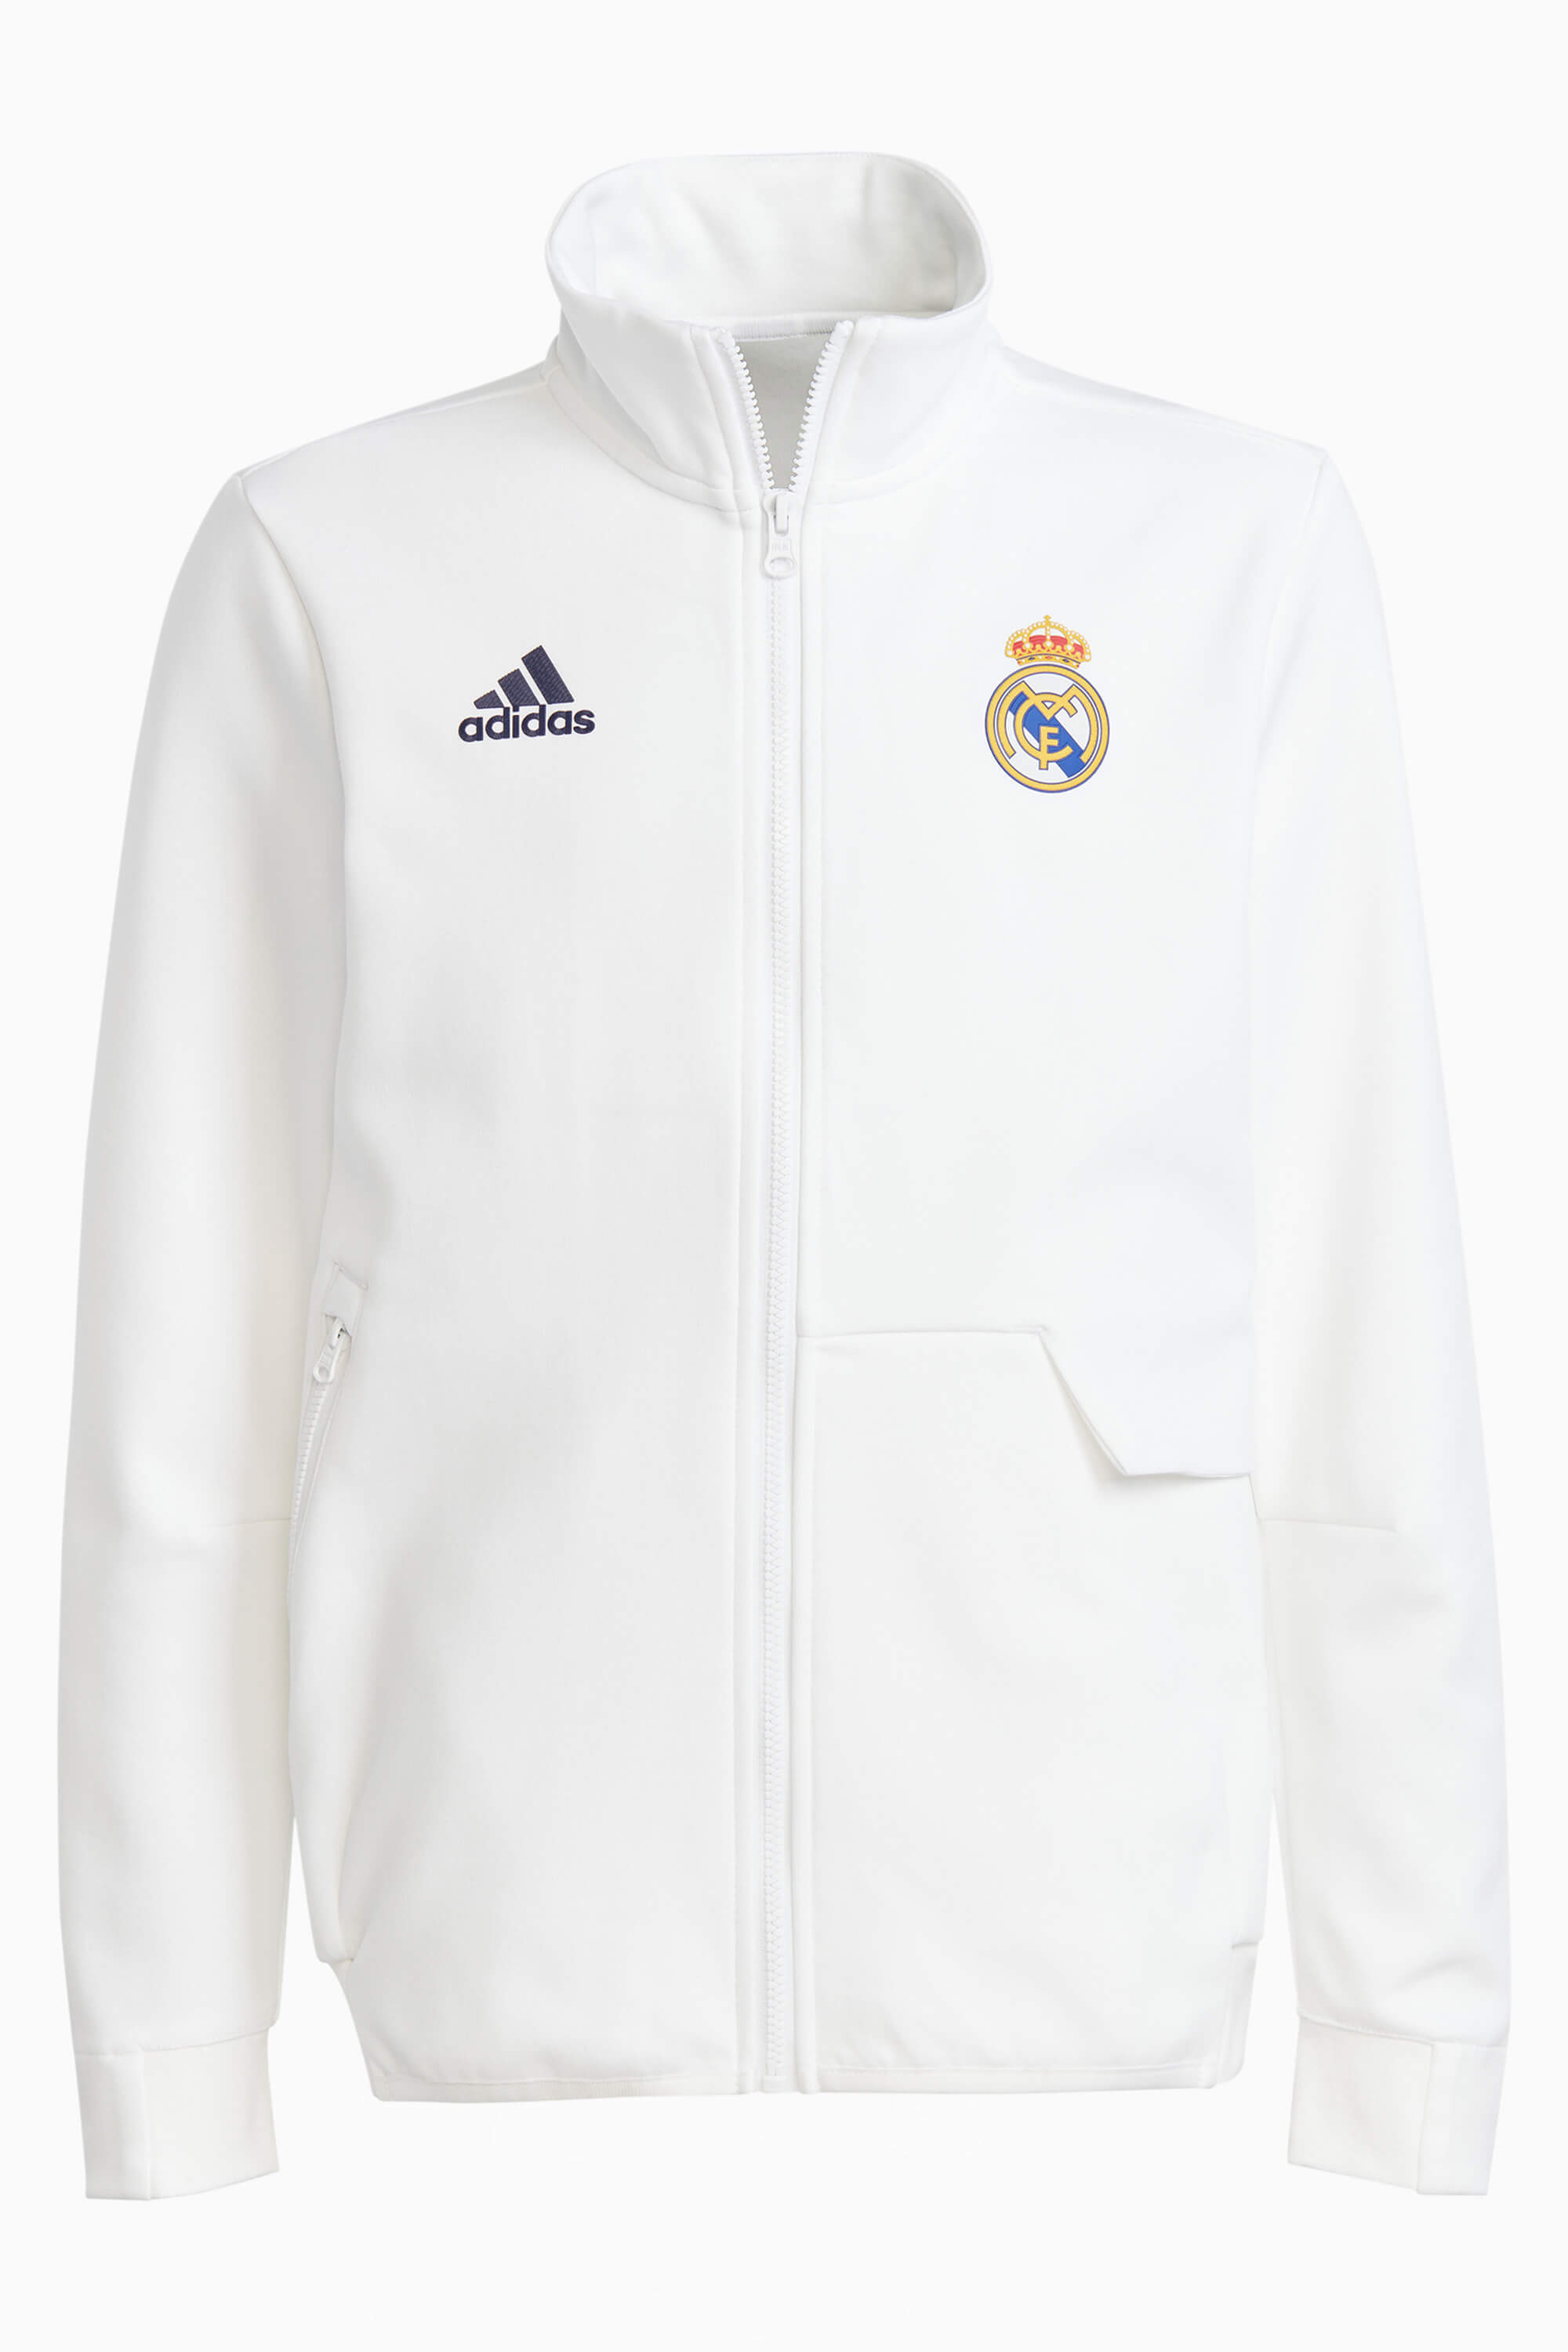 sudadera Junior Adidas Real  Sudadera oficial Real Madrid Adidas